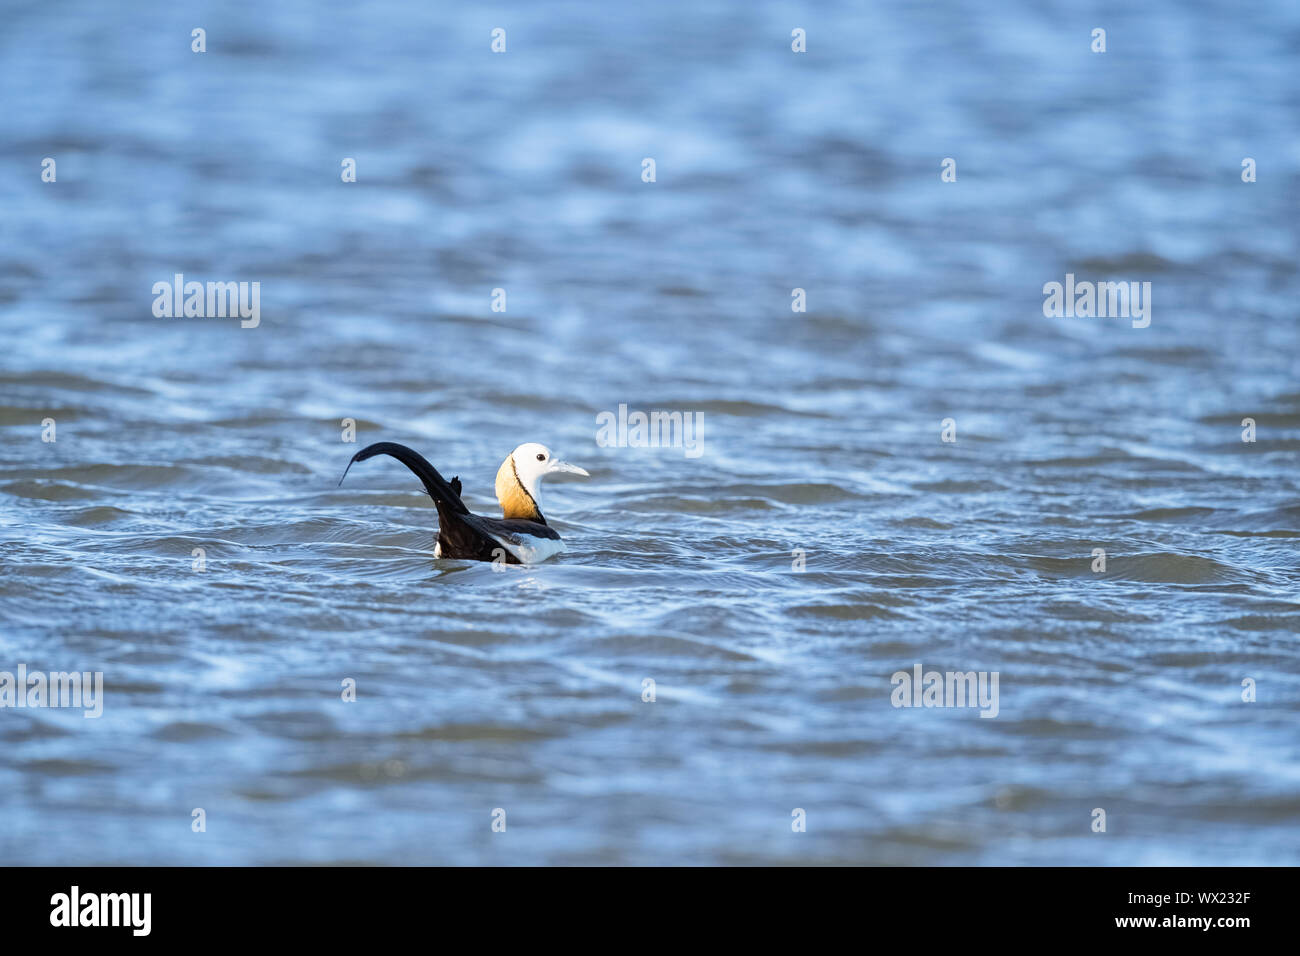 water pheasant Stock Photo